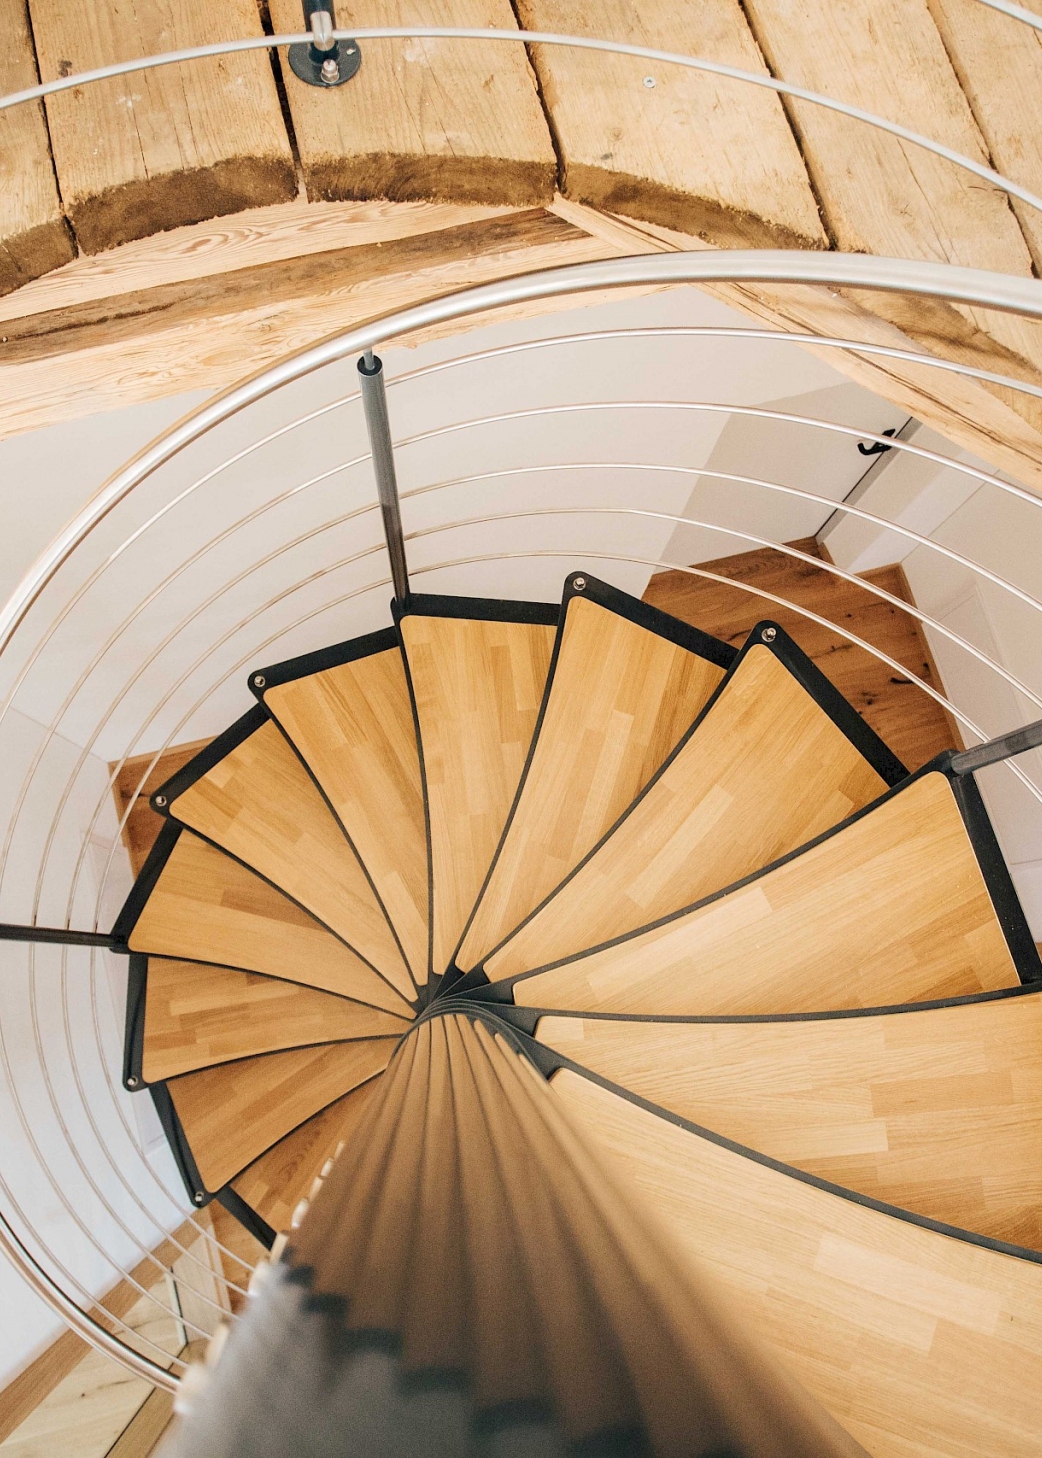 Les planches rustiques forment un contraste intéressant avec le design épuré de l’escalier dont les marches ne sont autres que des lames de sol à l’anglaise.